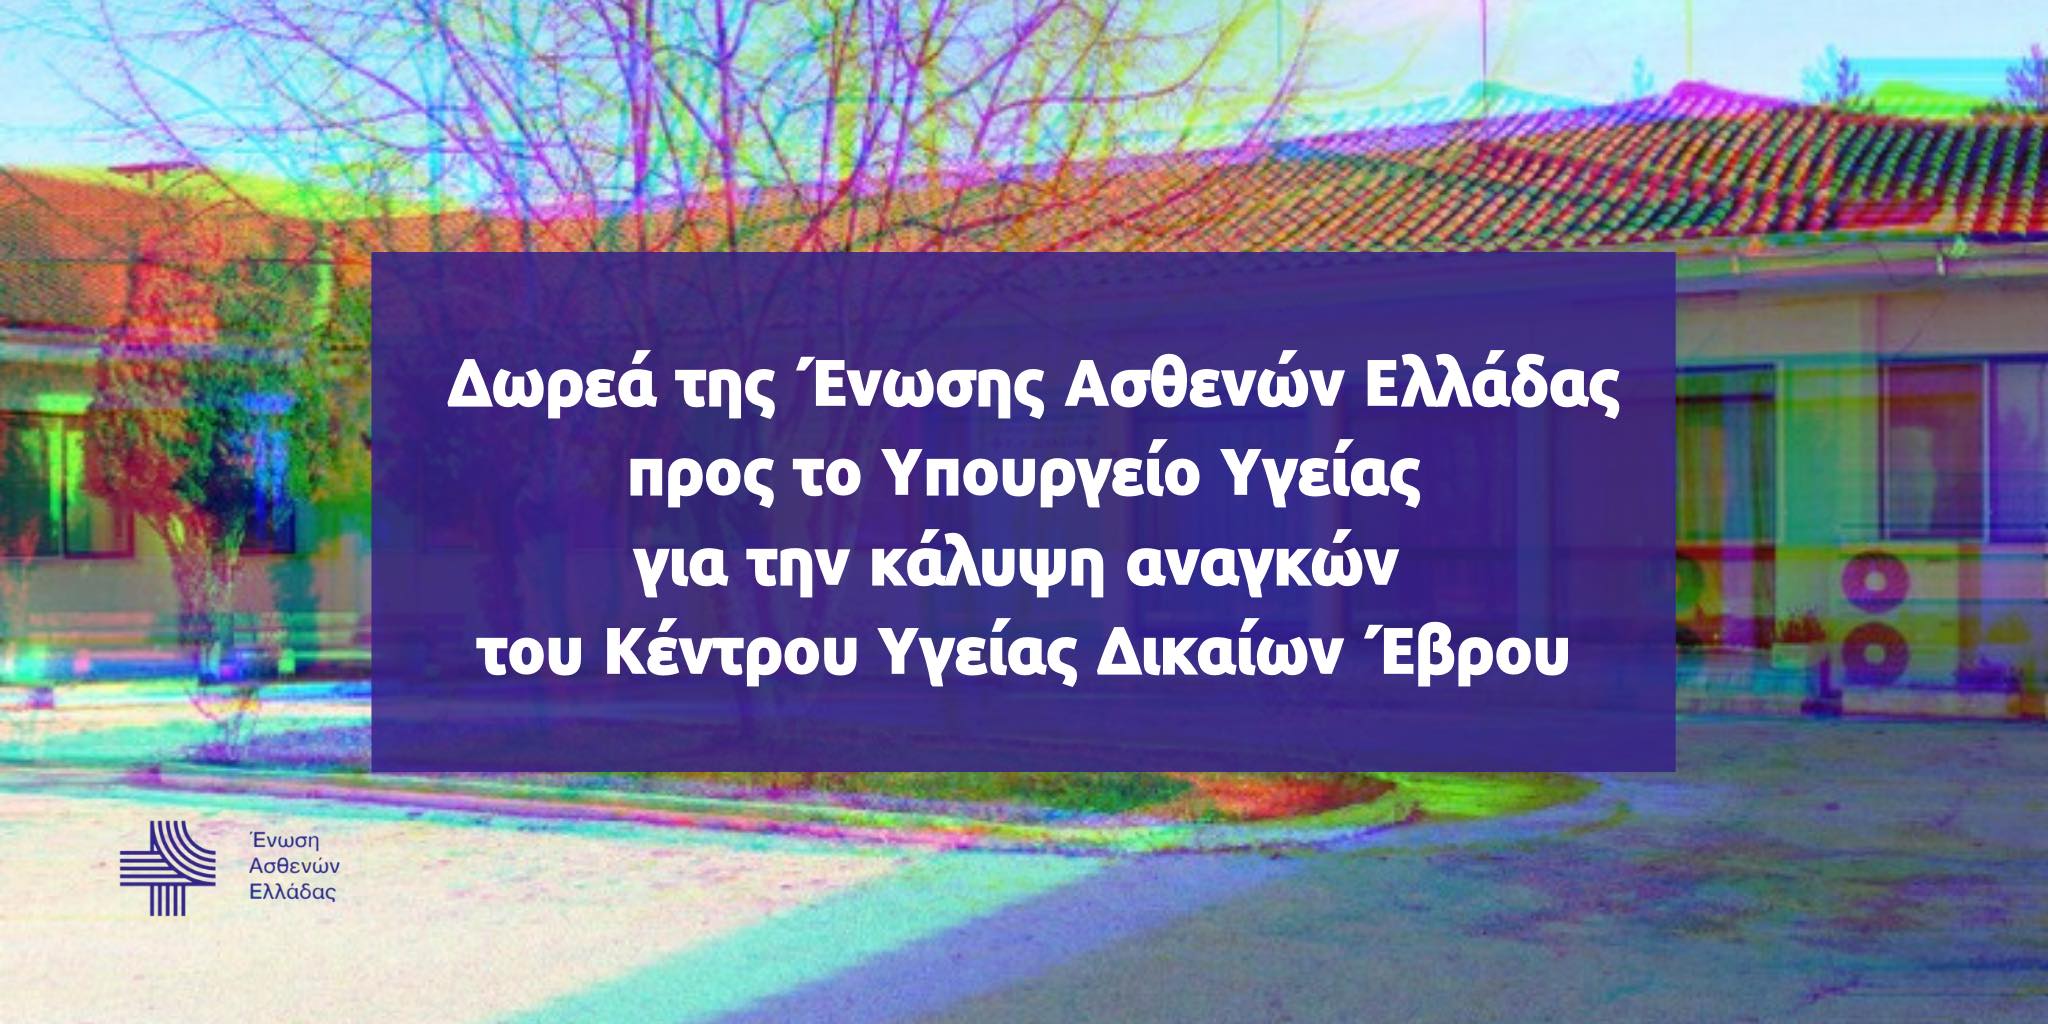 Δωρεά της Ένωσης Ασθενών Ελλάδας για την κάλυψη αναγκών του κέντρου υγείας Έβρου